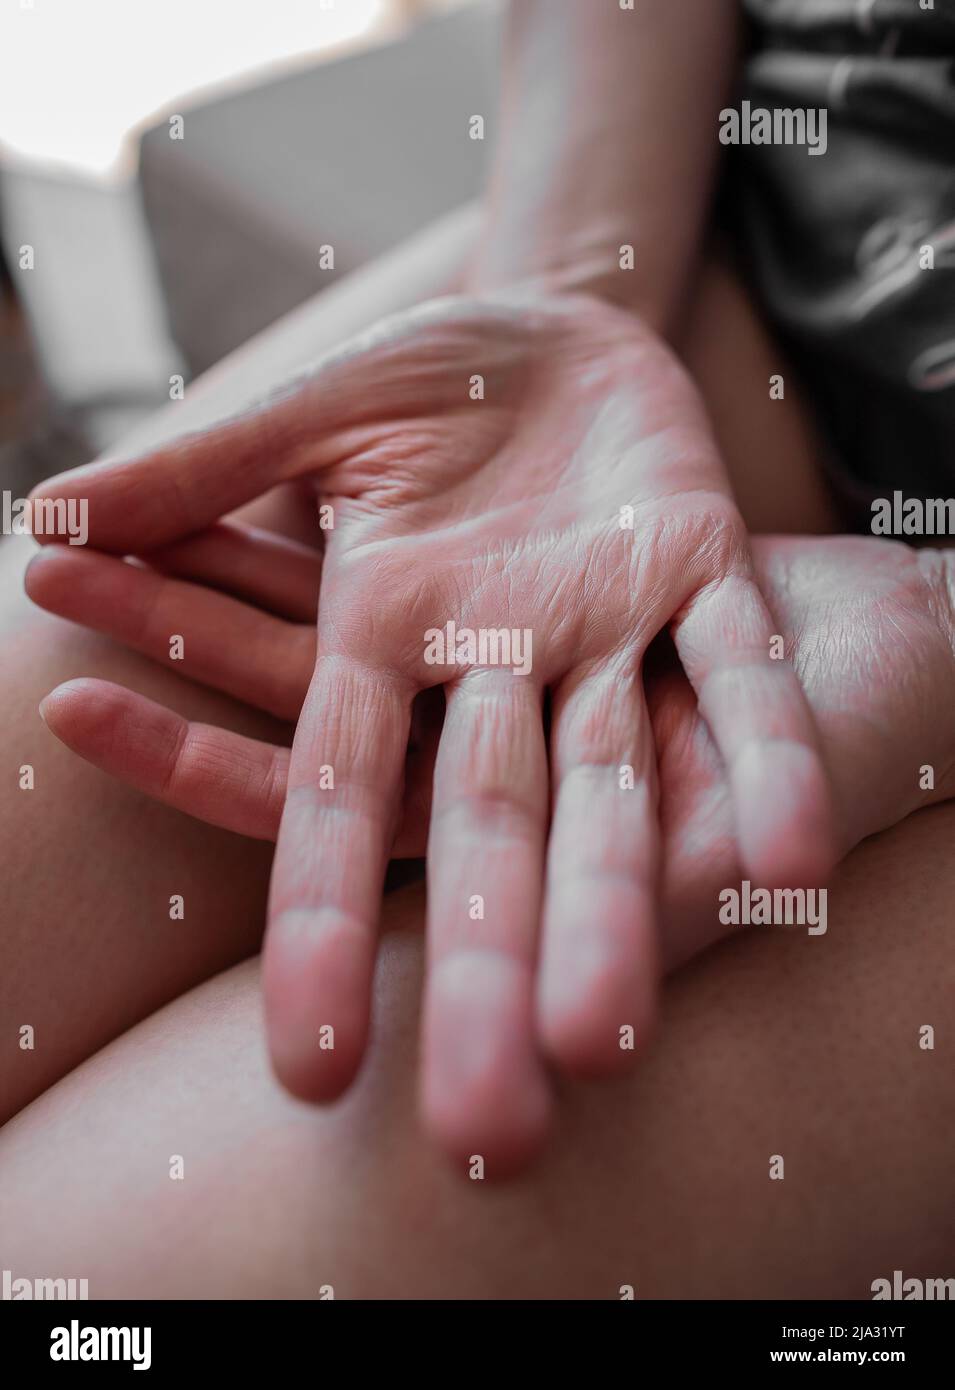 Hände einer jungen Frau mit Ehlers-Danlos-Syndrom, mit sehr trockener, alt aussehender Haut, EDS-verknitterter Haut, die vorzeitig alt aussieht Stockfoto